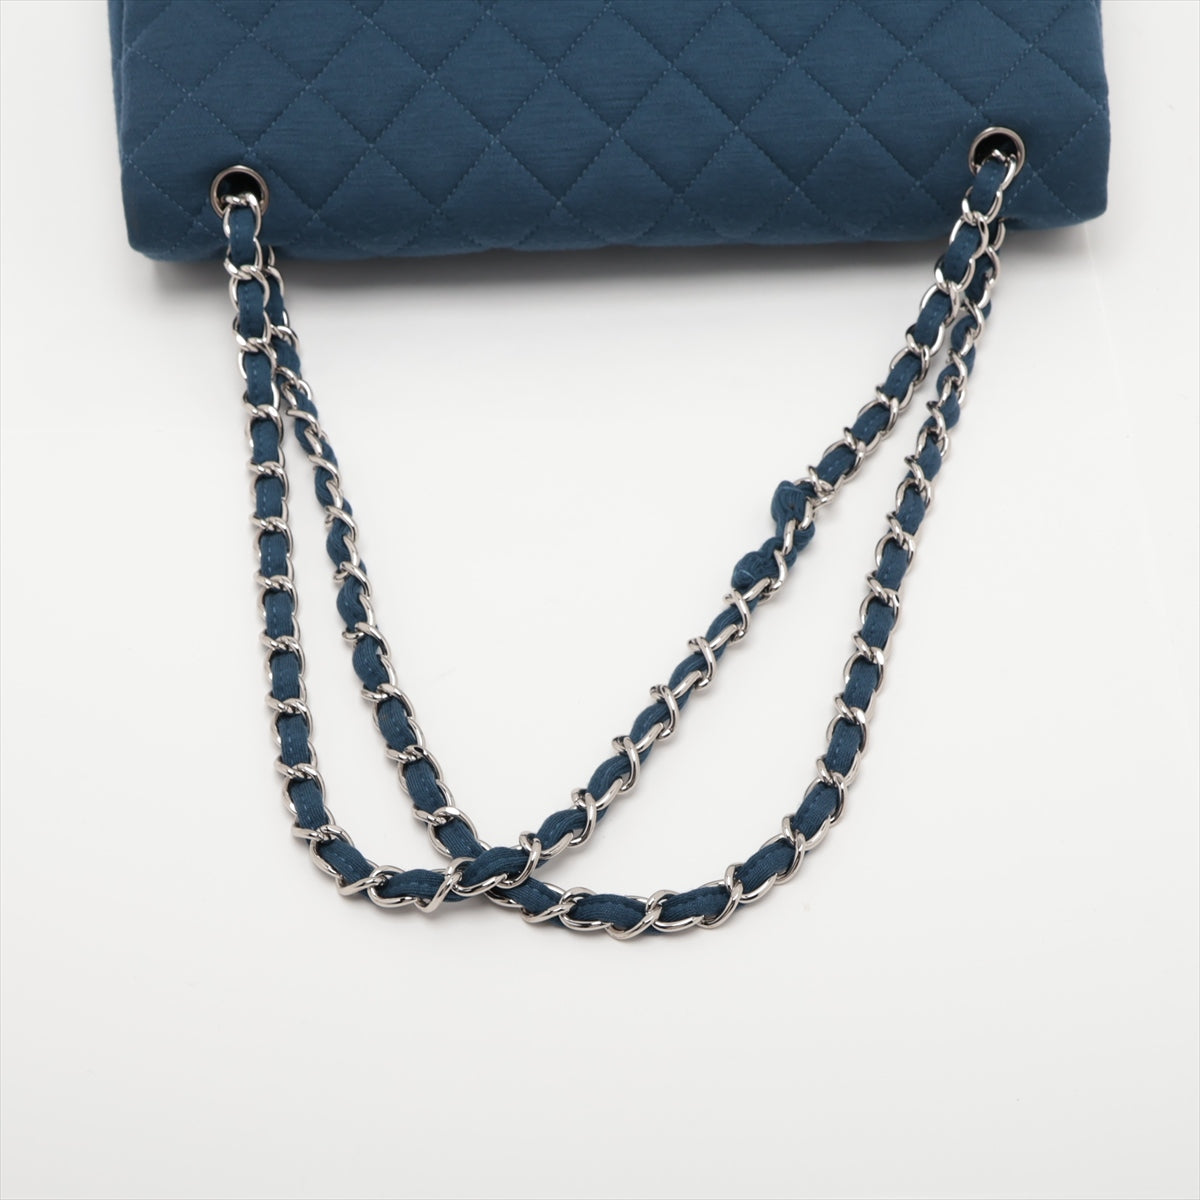 Chanel DEKAMATRASSE 30 Large Cotton Single Flap Double Chain Bag Blue Silver Metal Fittings 13XXXXXX